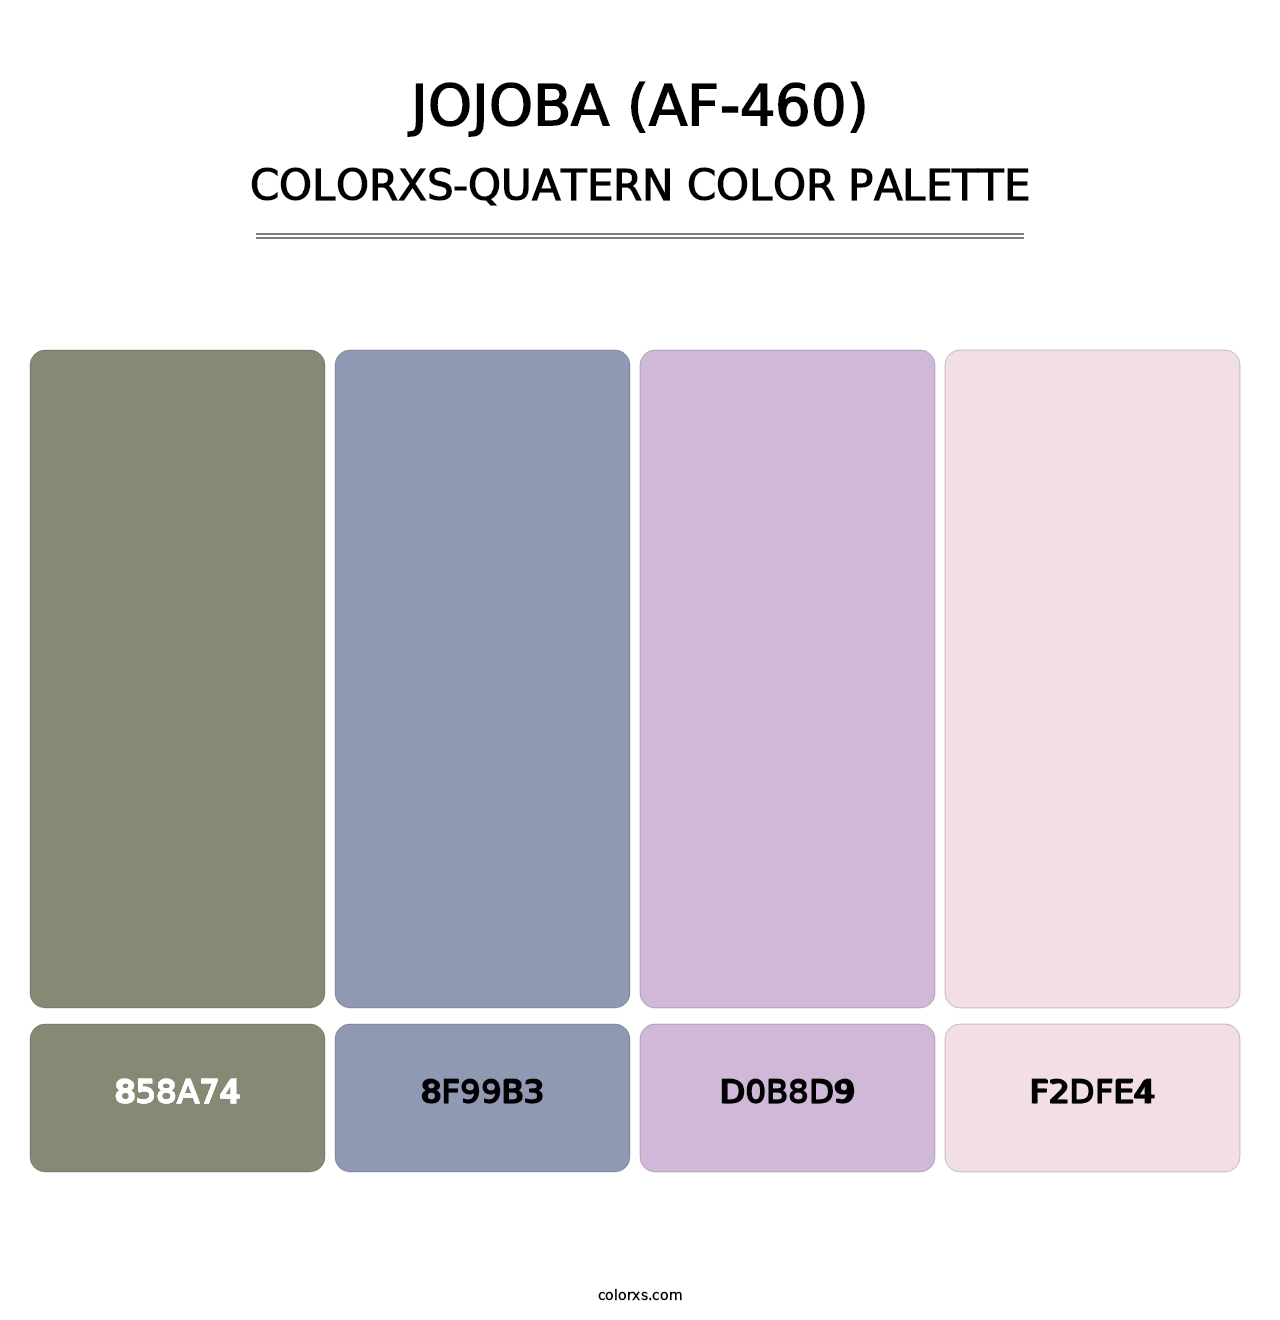 Jojoba (AF-460) - Colorxs Quatern Palette